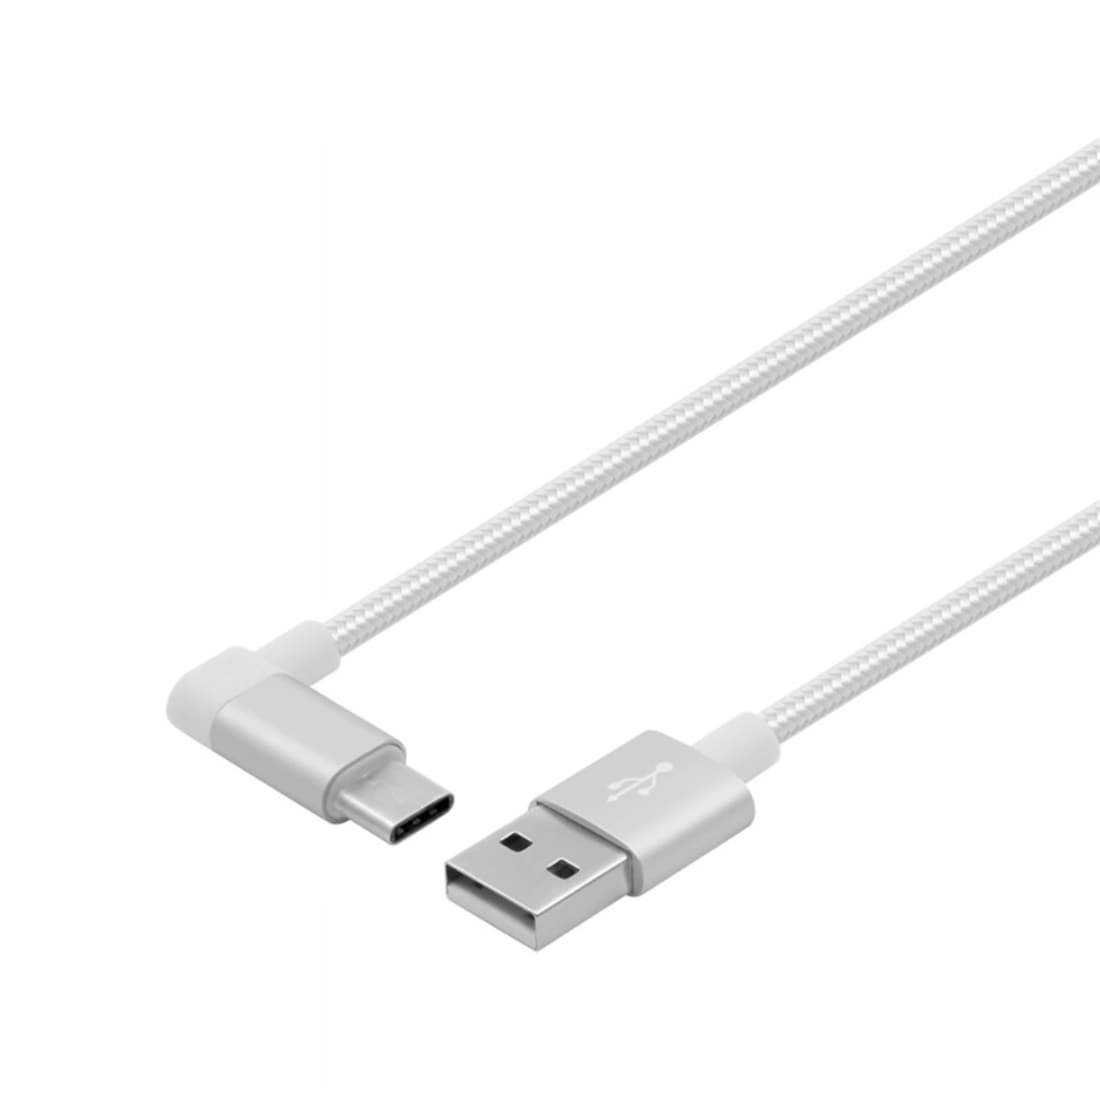 Laddkabel / usbkabel / datakabel USB 3.1 Typ-C USB 2.0